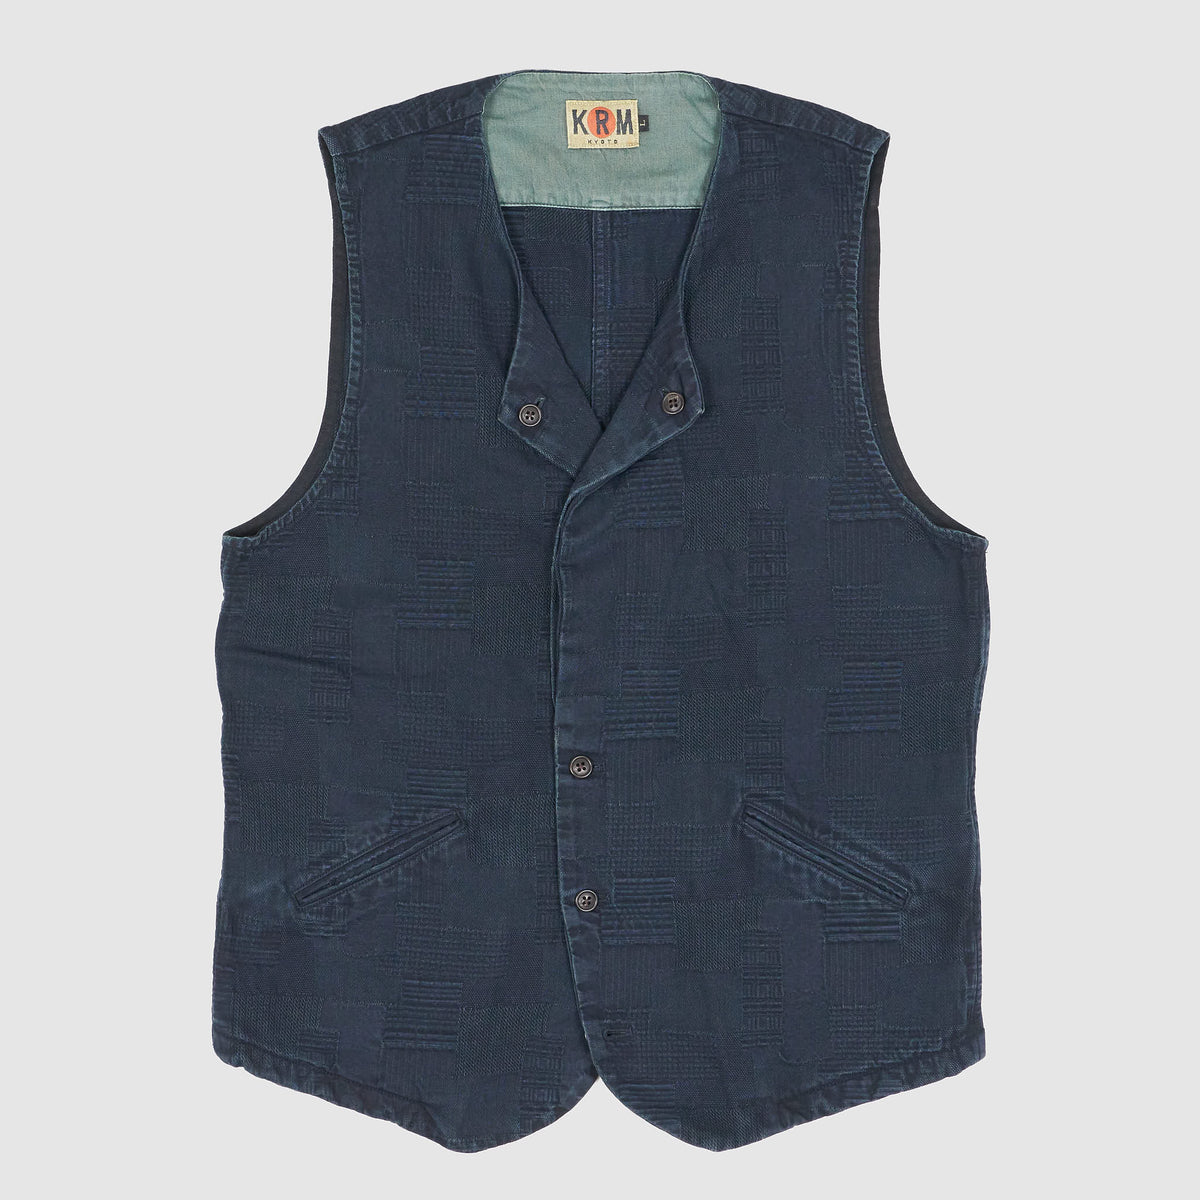 KRM Jacquard Woven Plaid Pattern vest